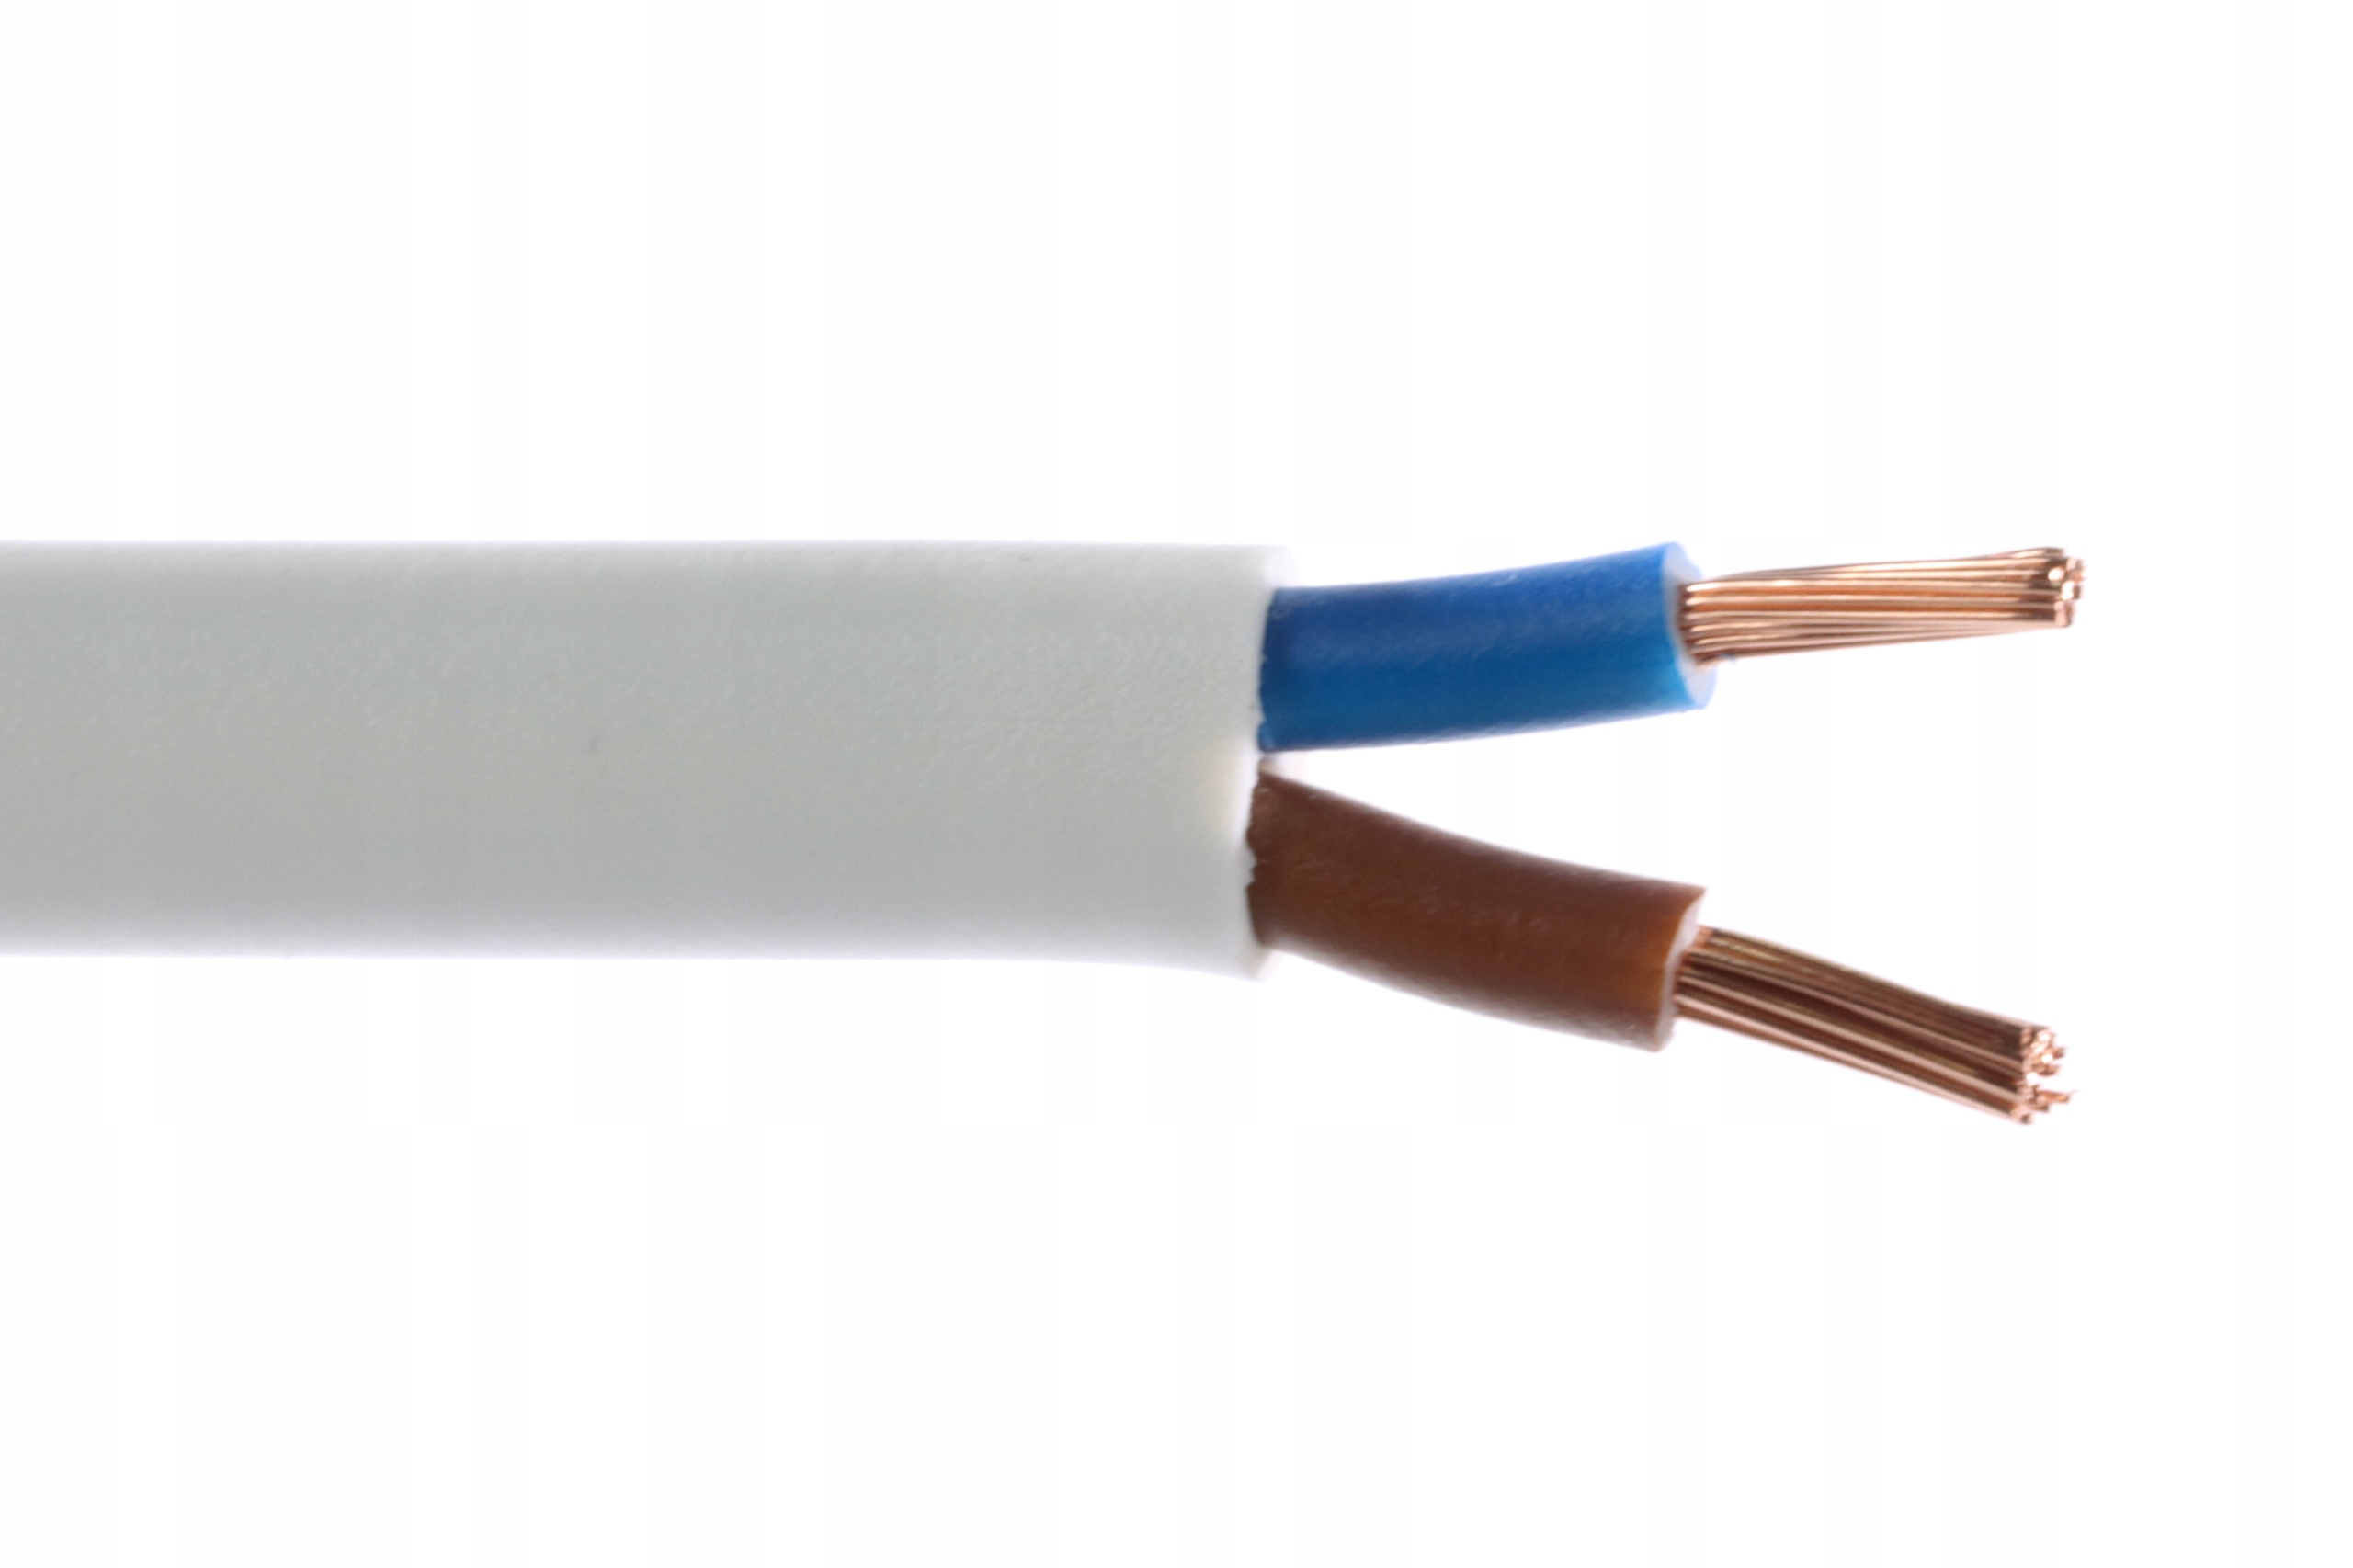 Przewód kabel elektryczny linka OMY 2x1,5 100m (OMY 2x1,5 biały) • Cena,  Opinie 6935487395 •